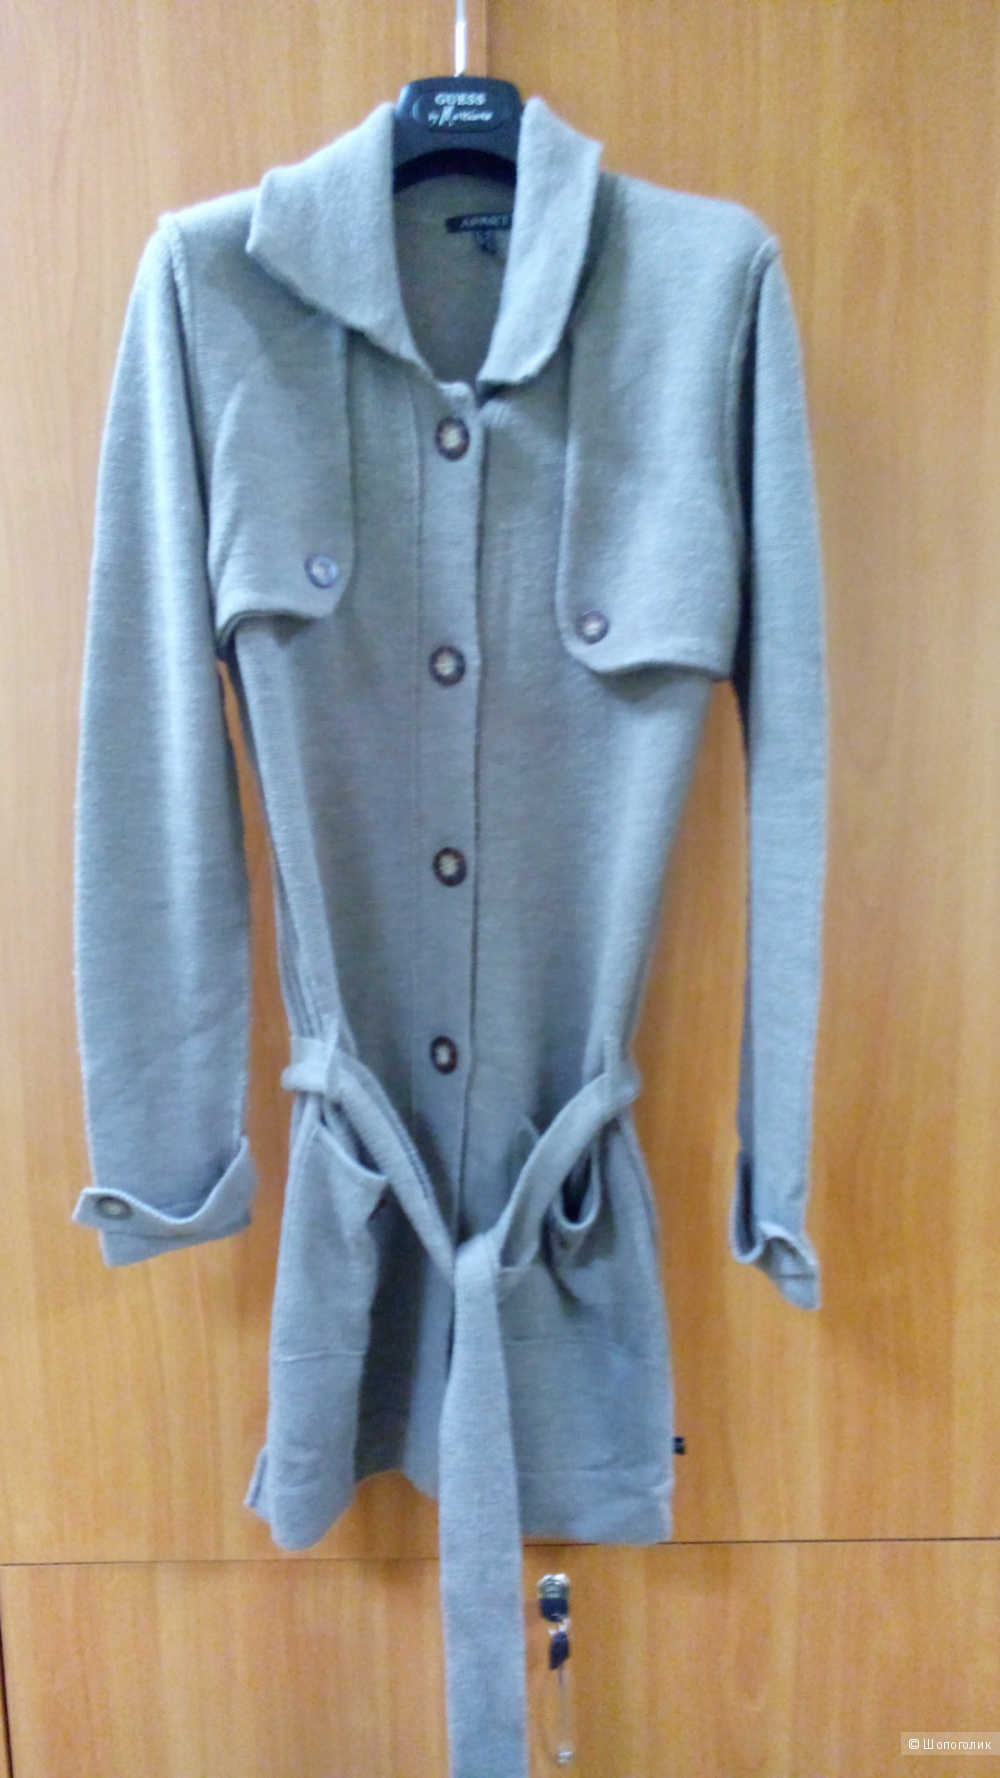 Кардиган-пальто длинный с поясом трикотаж(50 процентов шерсть) APART Германия в размере 40D 14 GB(46-48 росс)